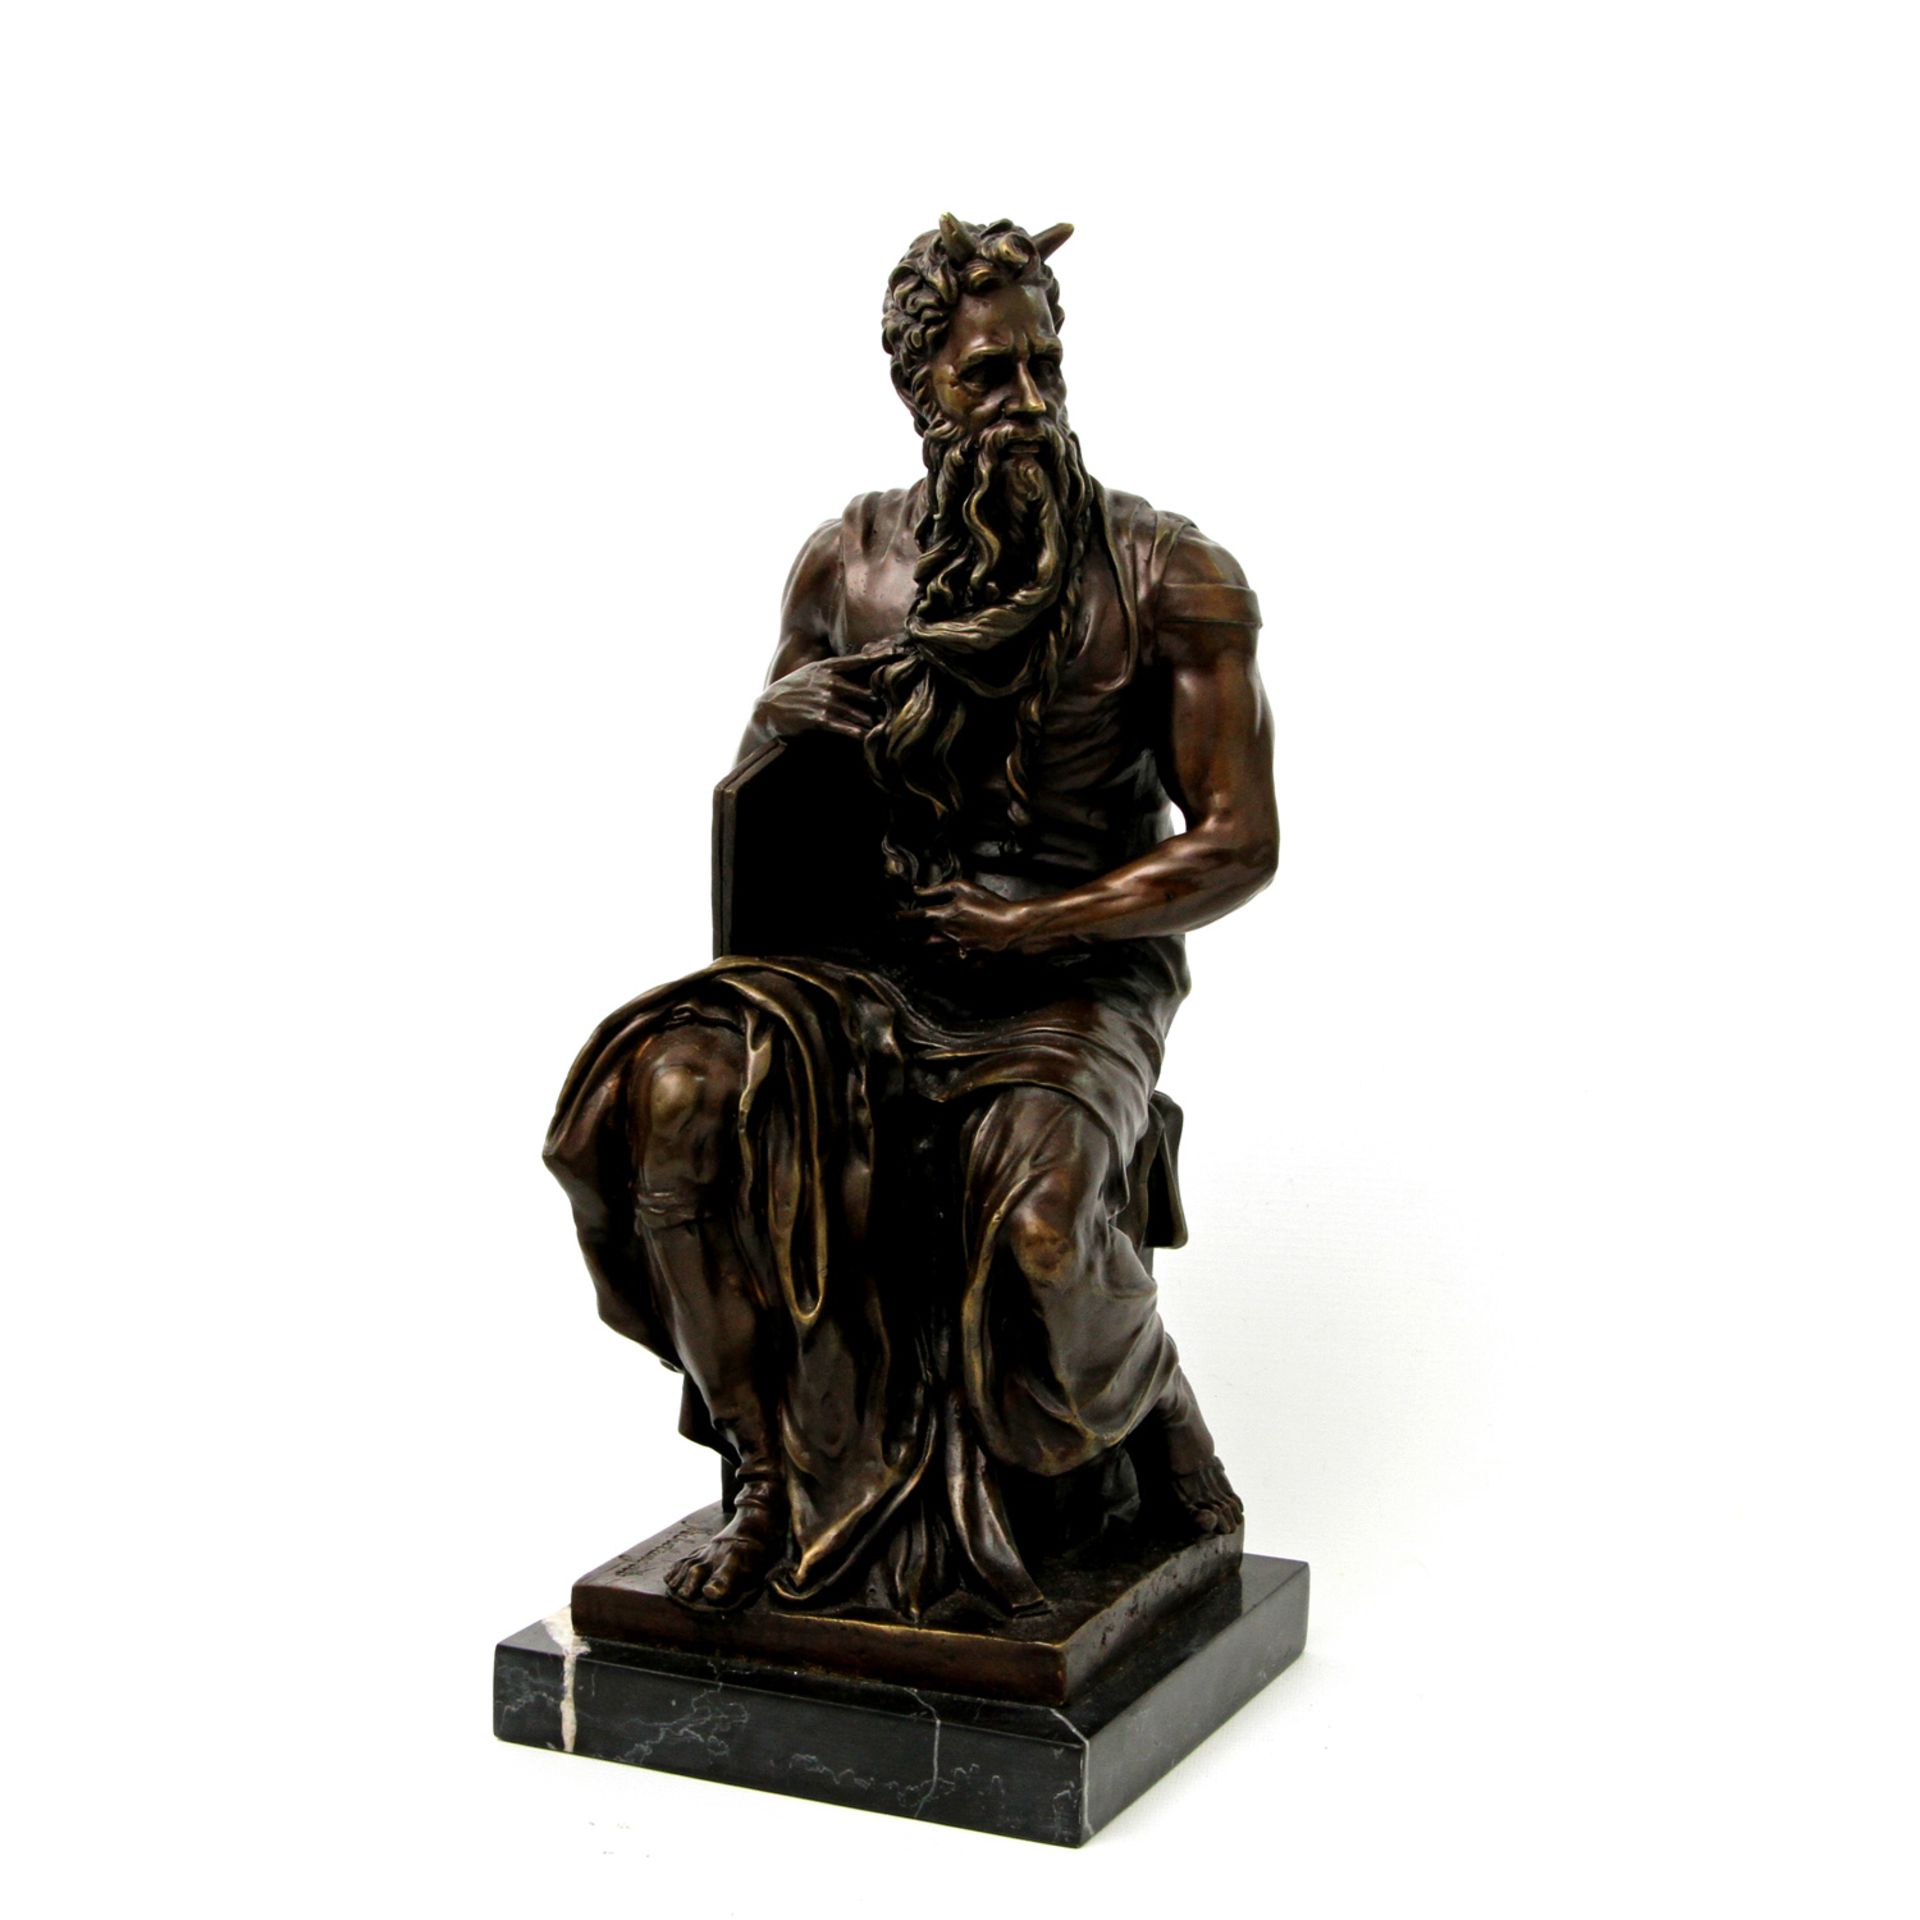 MOSES NACH MICHELANGELO 20.Jh., Bronze, bräunlich patiniert, Darstellung des Moses nach dem Original